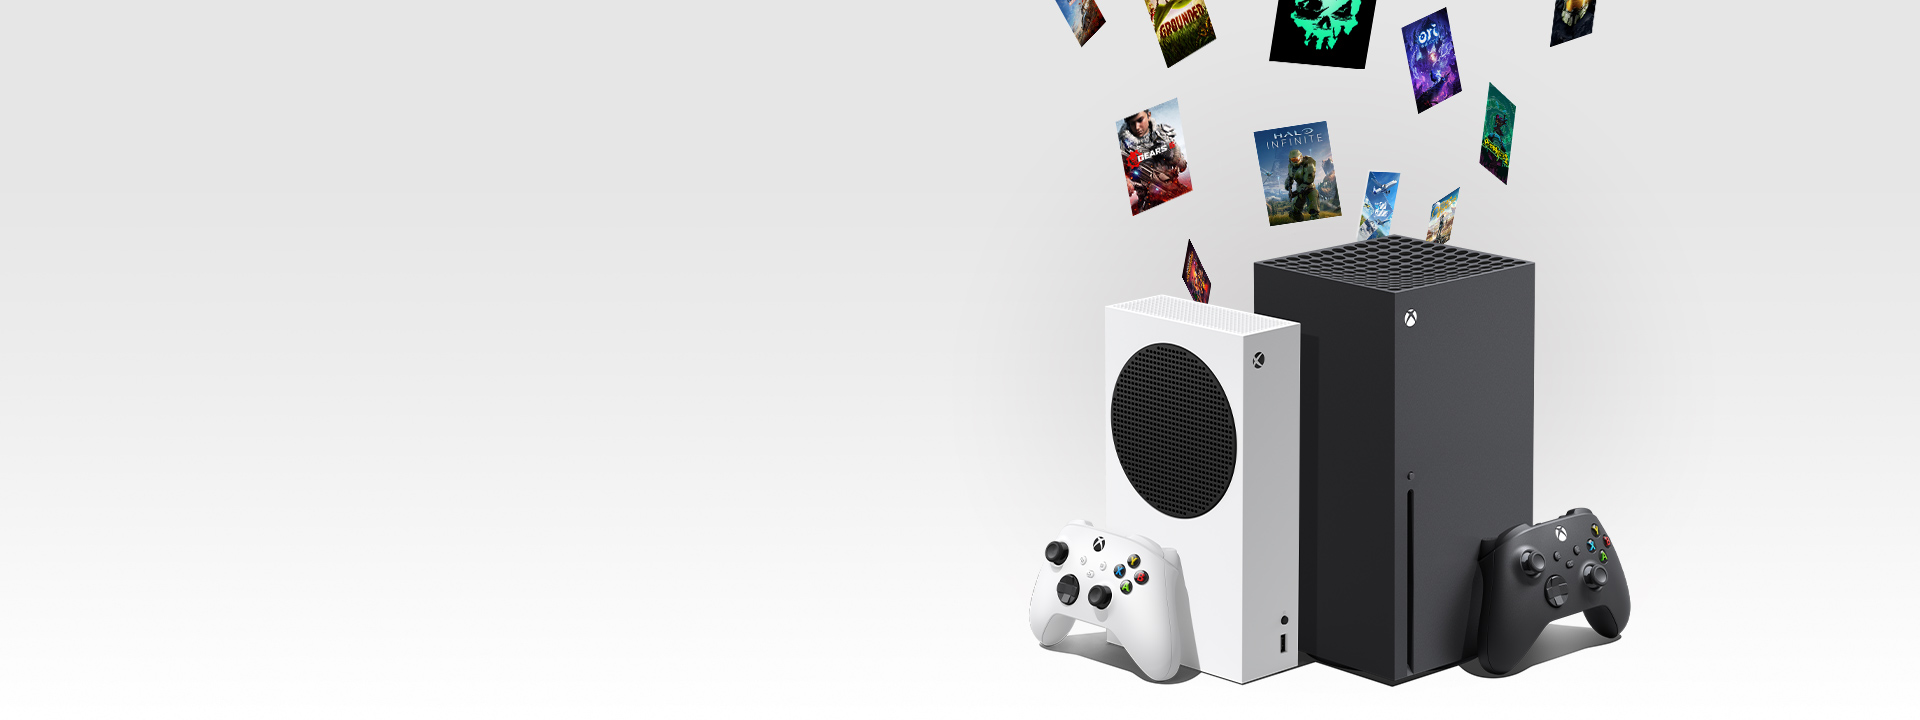 Rəqəmsal Xbox oyunları Xbox seriyası X və XBOX seriyasının konsollarını yükləyir